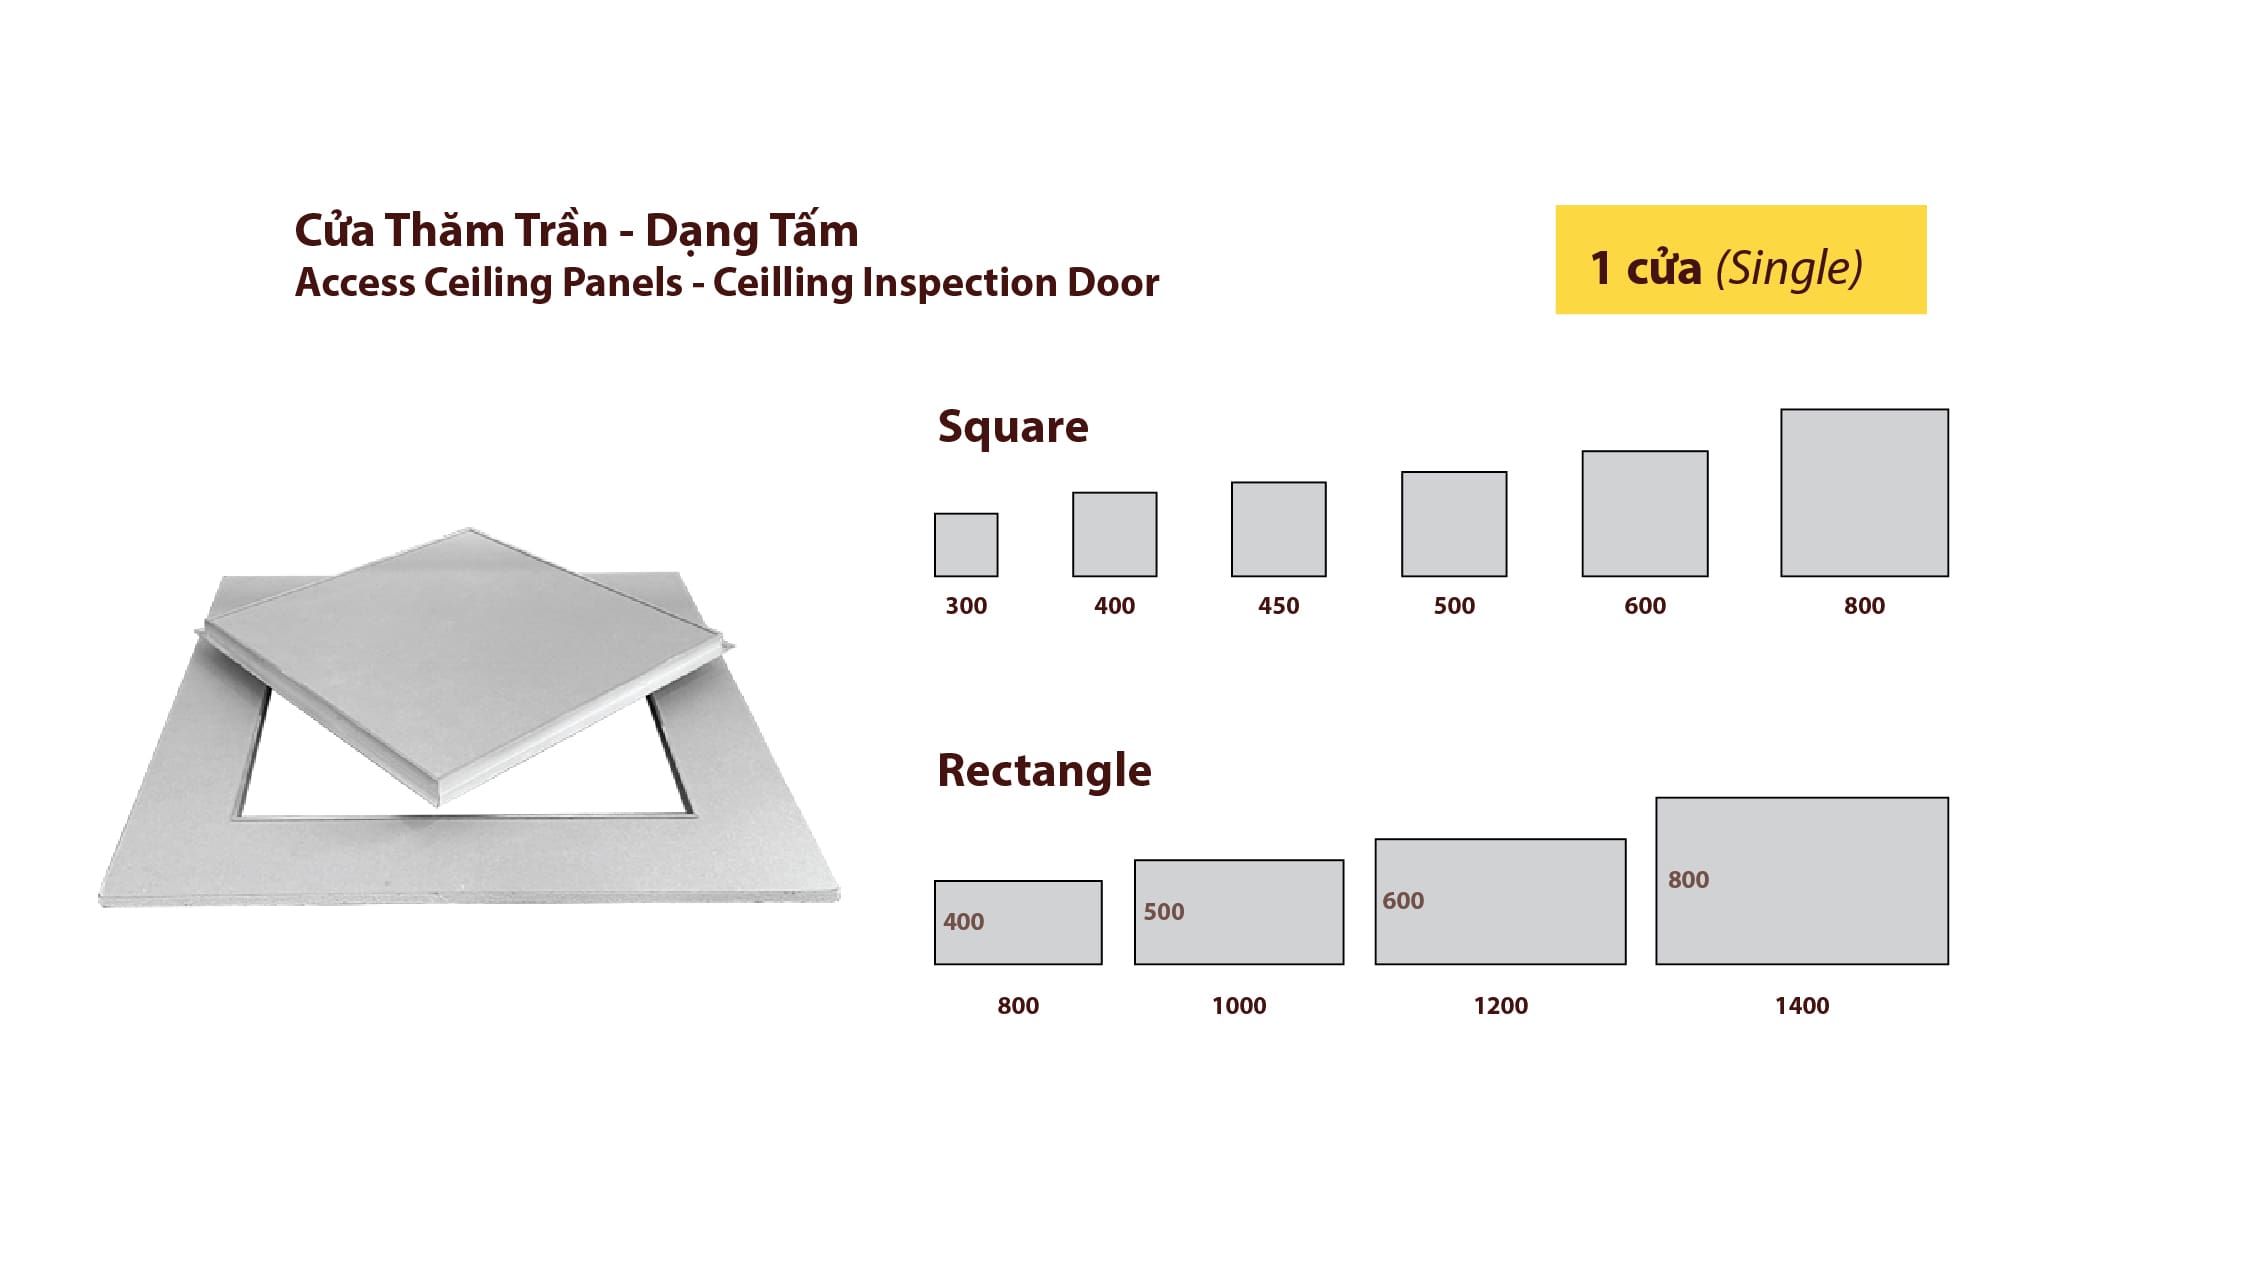 Access Ceiling Panels Inspection Door in Vietnam